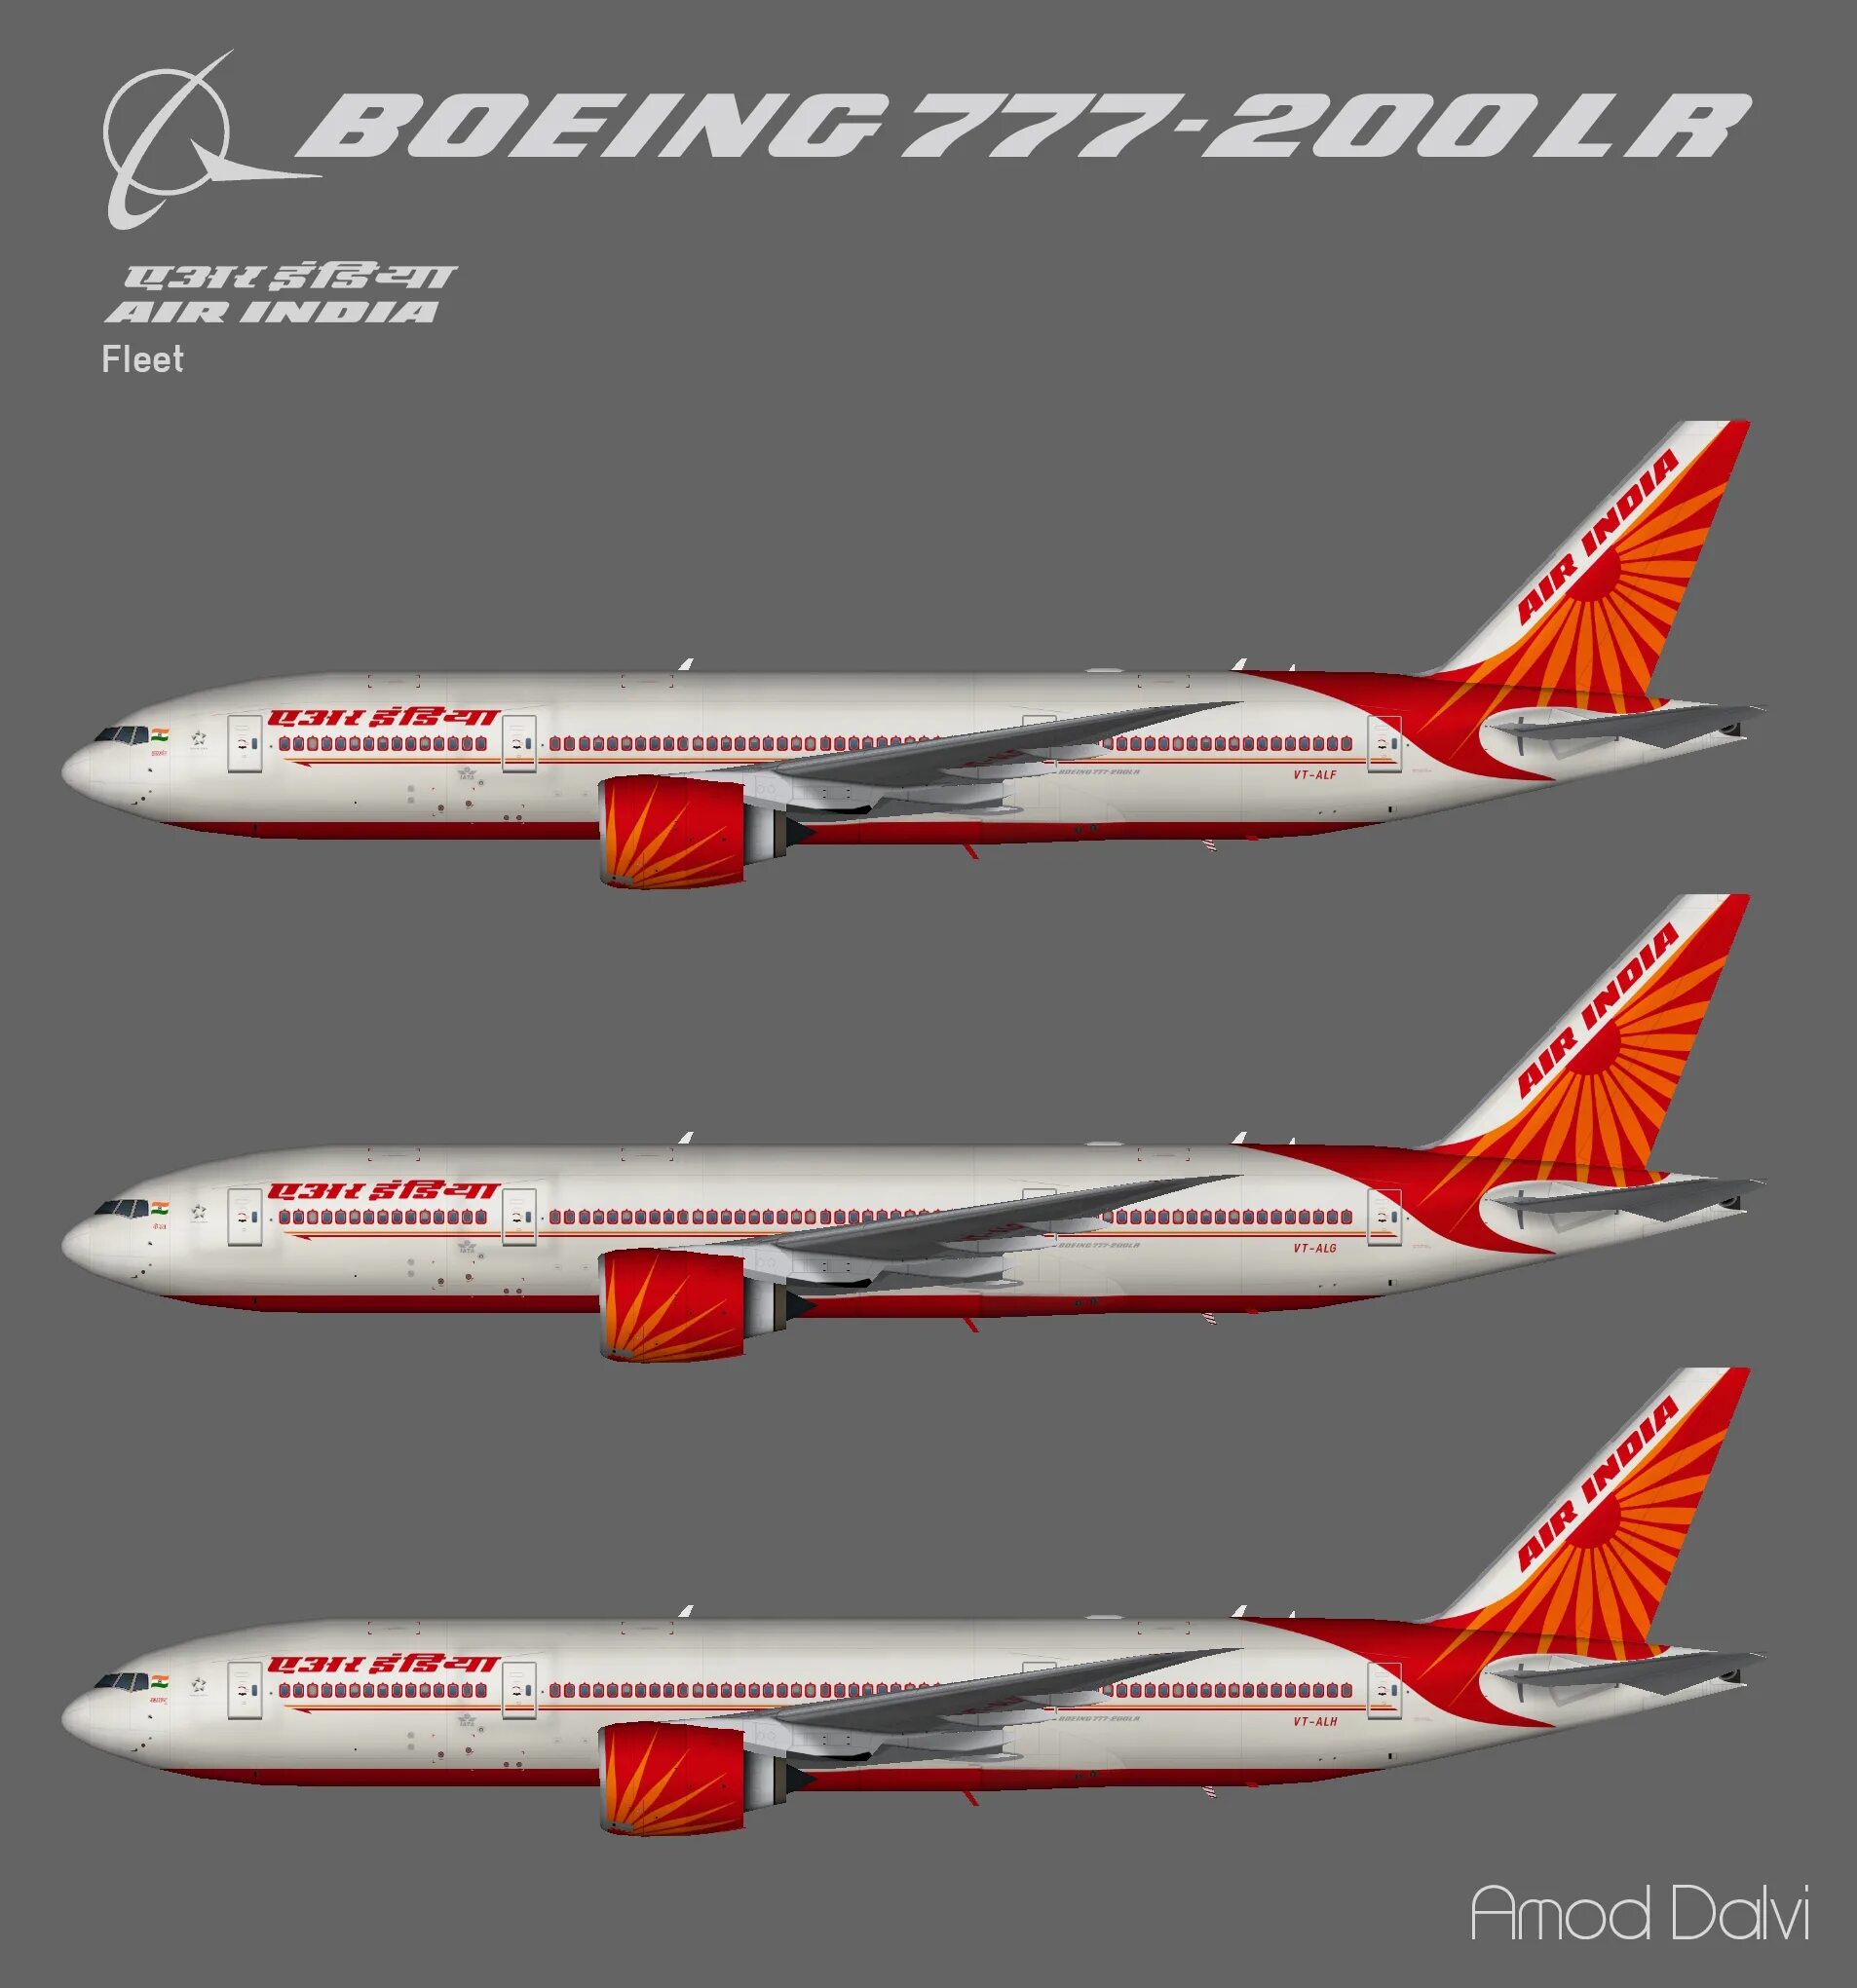 Red wings boeing 777. Boeing 777-200er Red Wings. Red Wings самолет 777-200. Боинг 777 200 ред Вингс. Red Wings 777-200 салон.